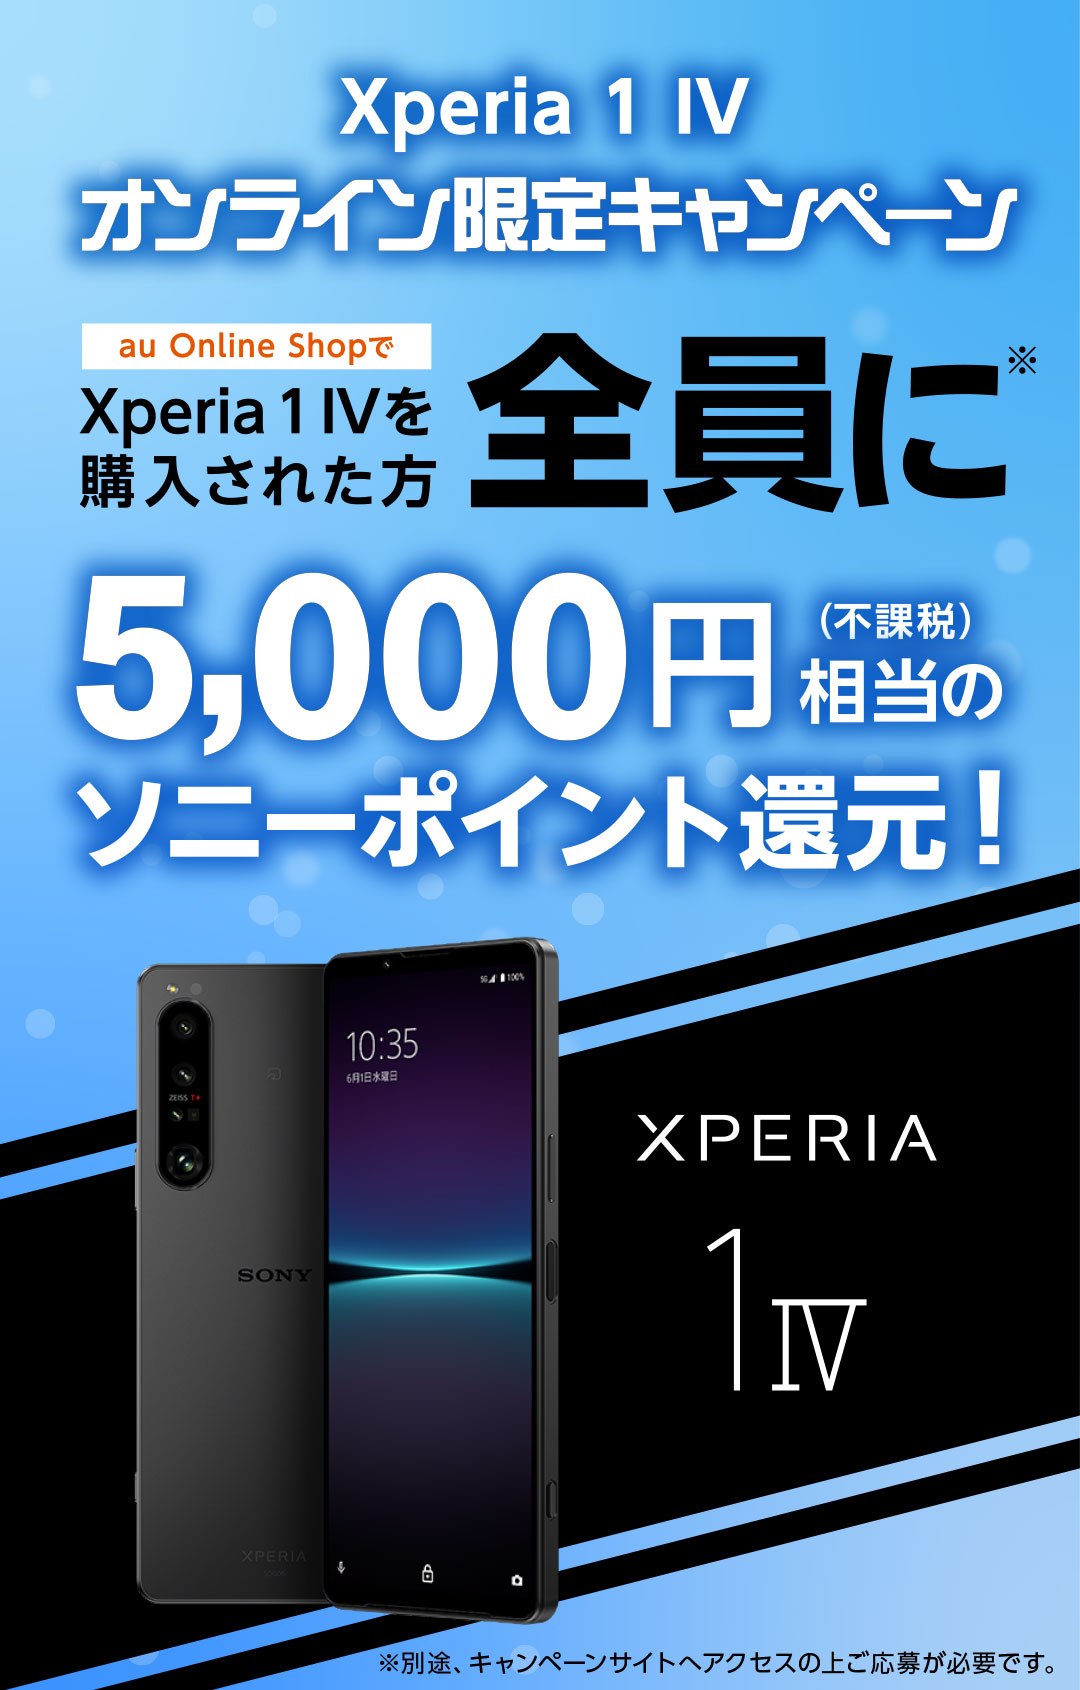 au Xperia1 IV オンライン限定キャンペーン au Online Shopで Xperia1 IV を購入された方全員に※ 5,000円(不課税)相当のソニーポイント還元！ ※別途キャンペーンサイトへアクセスの上ご応募が必要です。